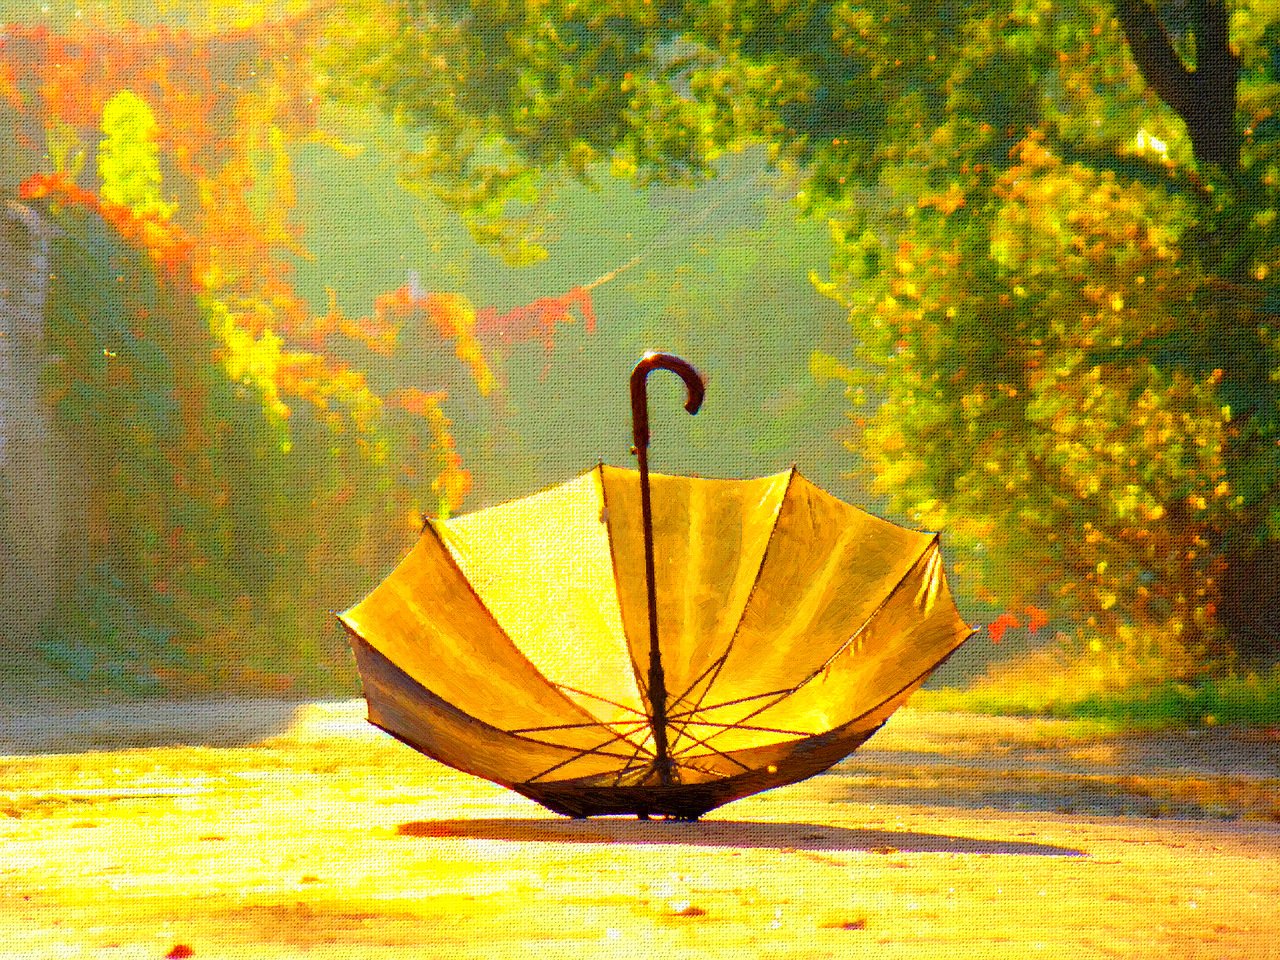 Обои зонтика. Зонтик. Осень зонтик. Натюрморт с зонтиком. Осенний зонт.